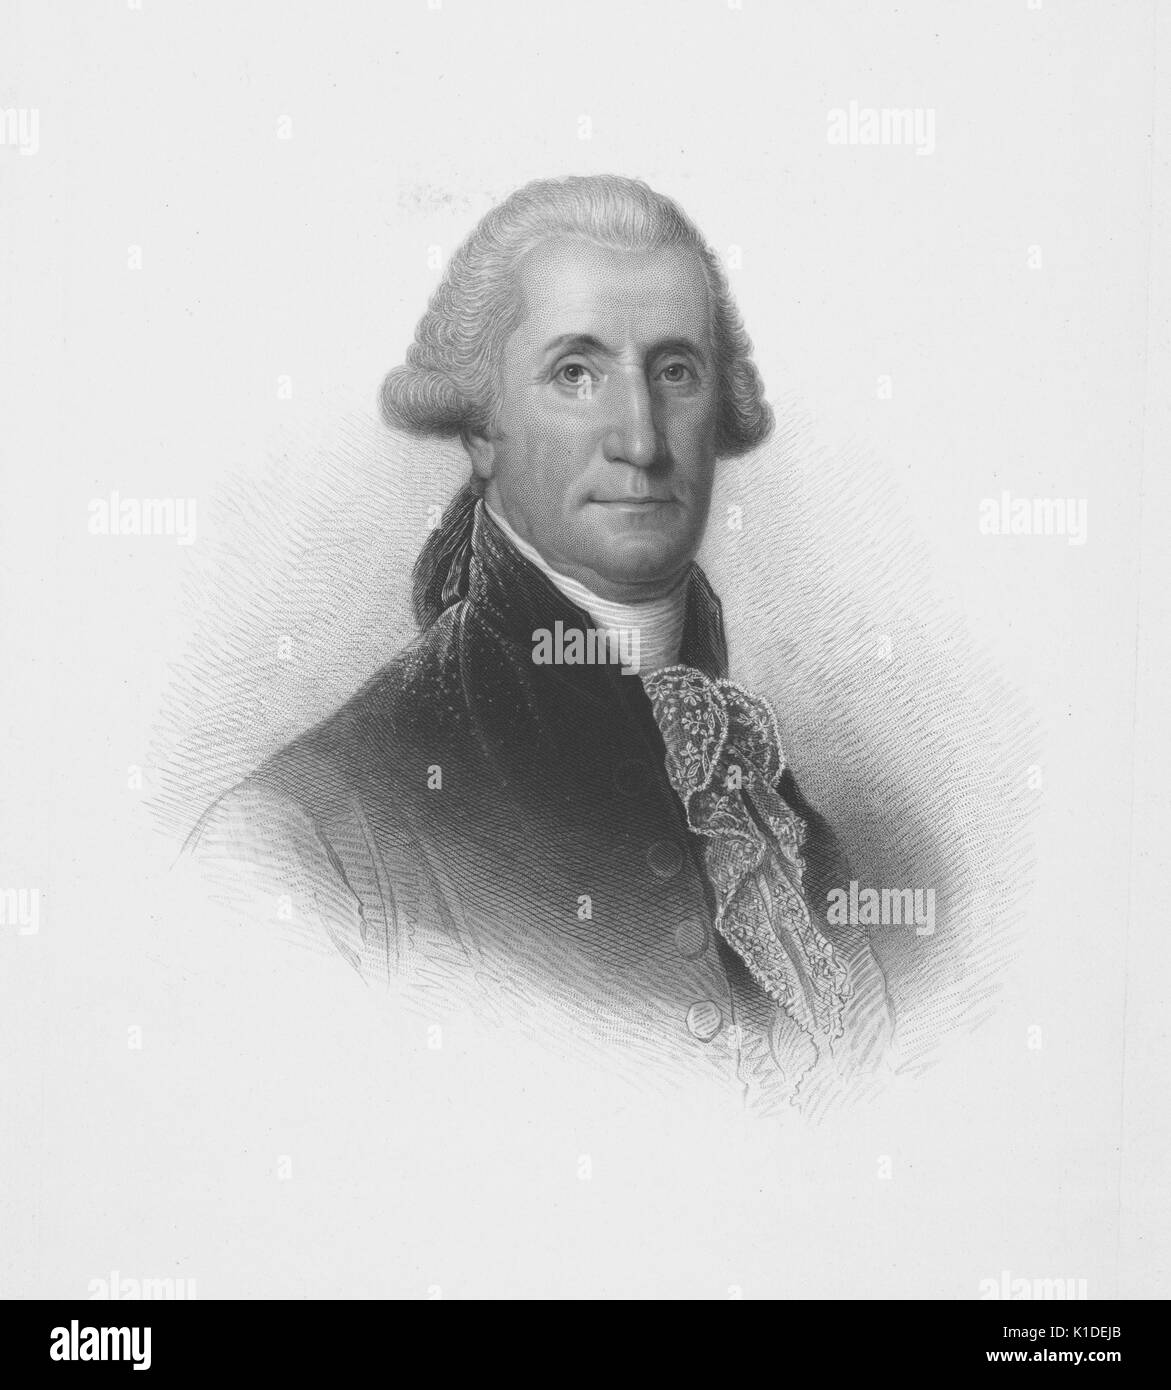 Ein kupferstich von einem Porträt von George Washington, 1900. Von der New York Public Library. Stockfoto